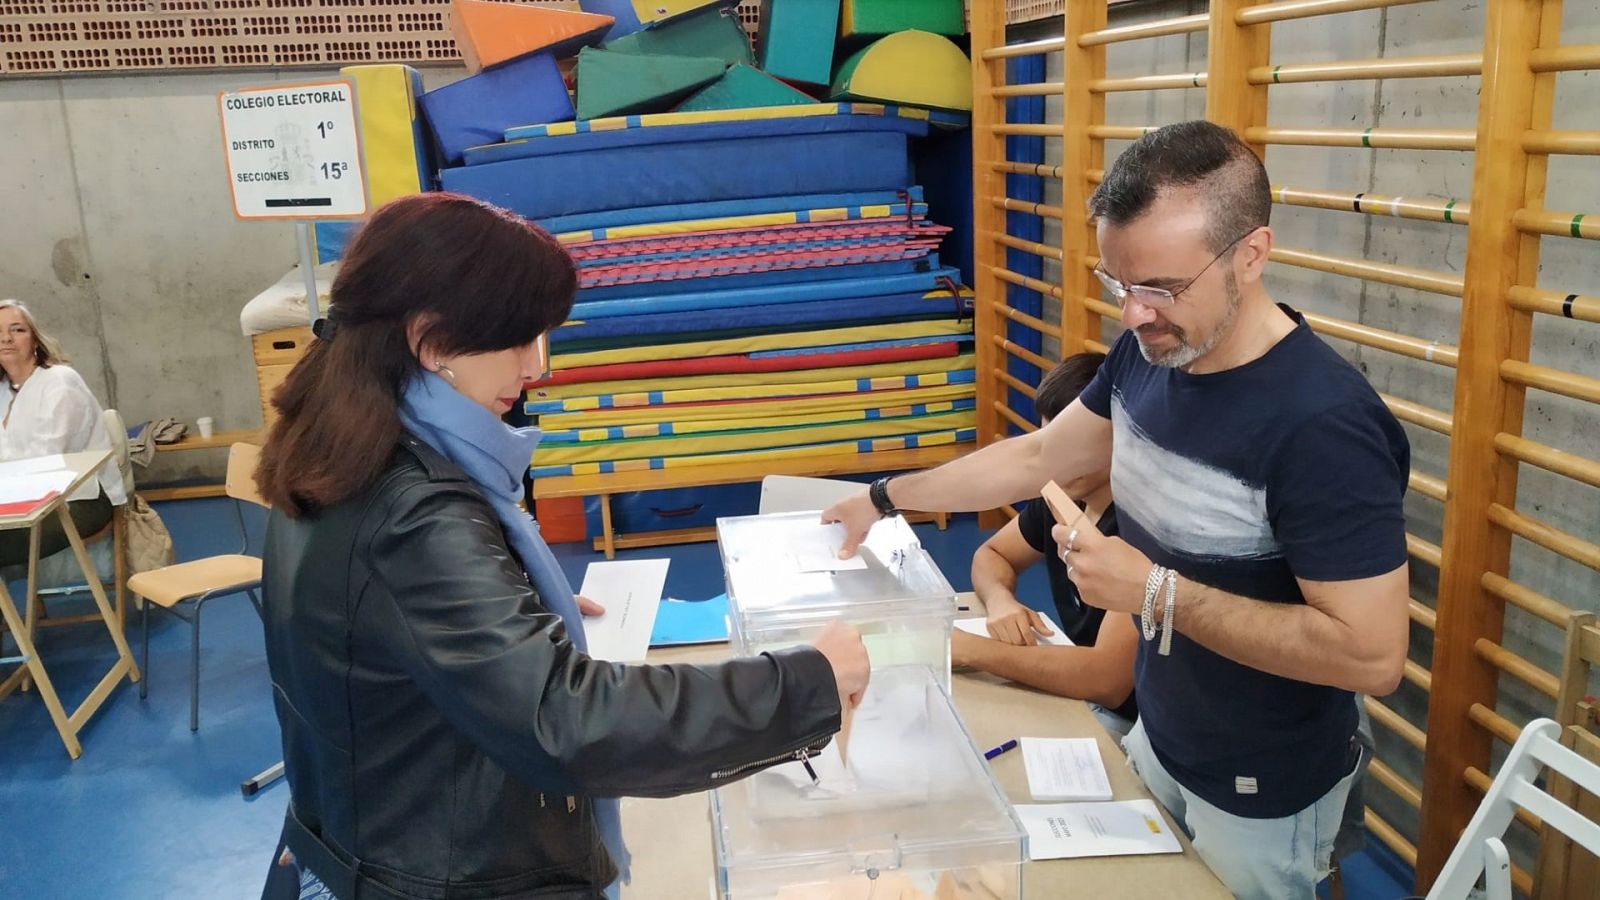 Los españoles acuden a las urnas esquivando la lluvia: "Cuantos antes mejor"